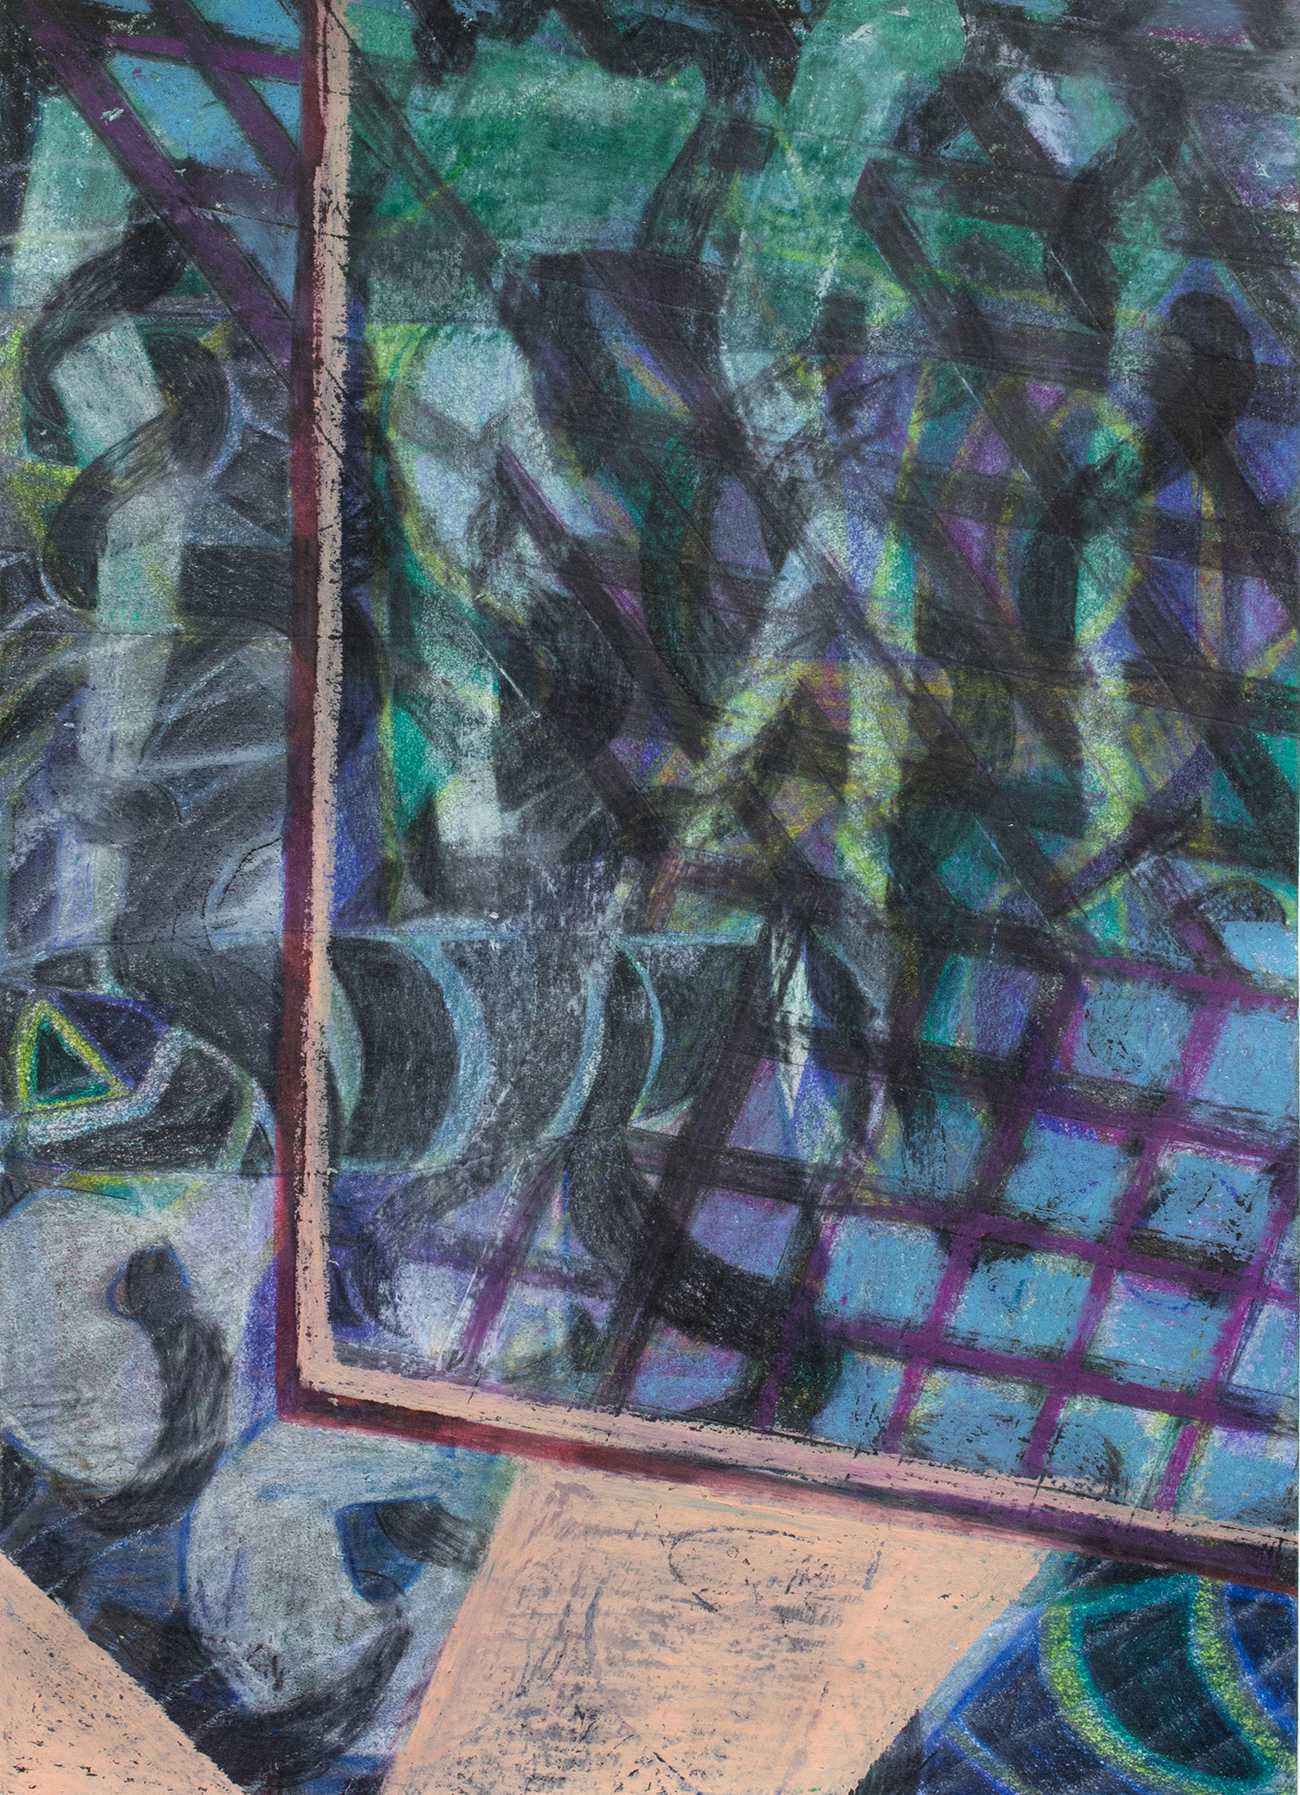 Gitter | 2019 | mixed media on paper | 21 x 15 cm